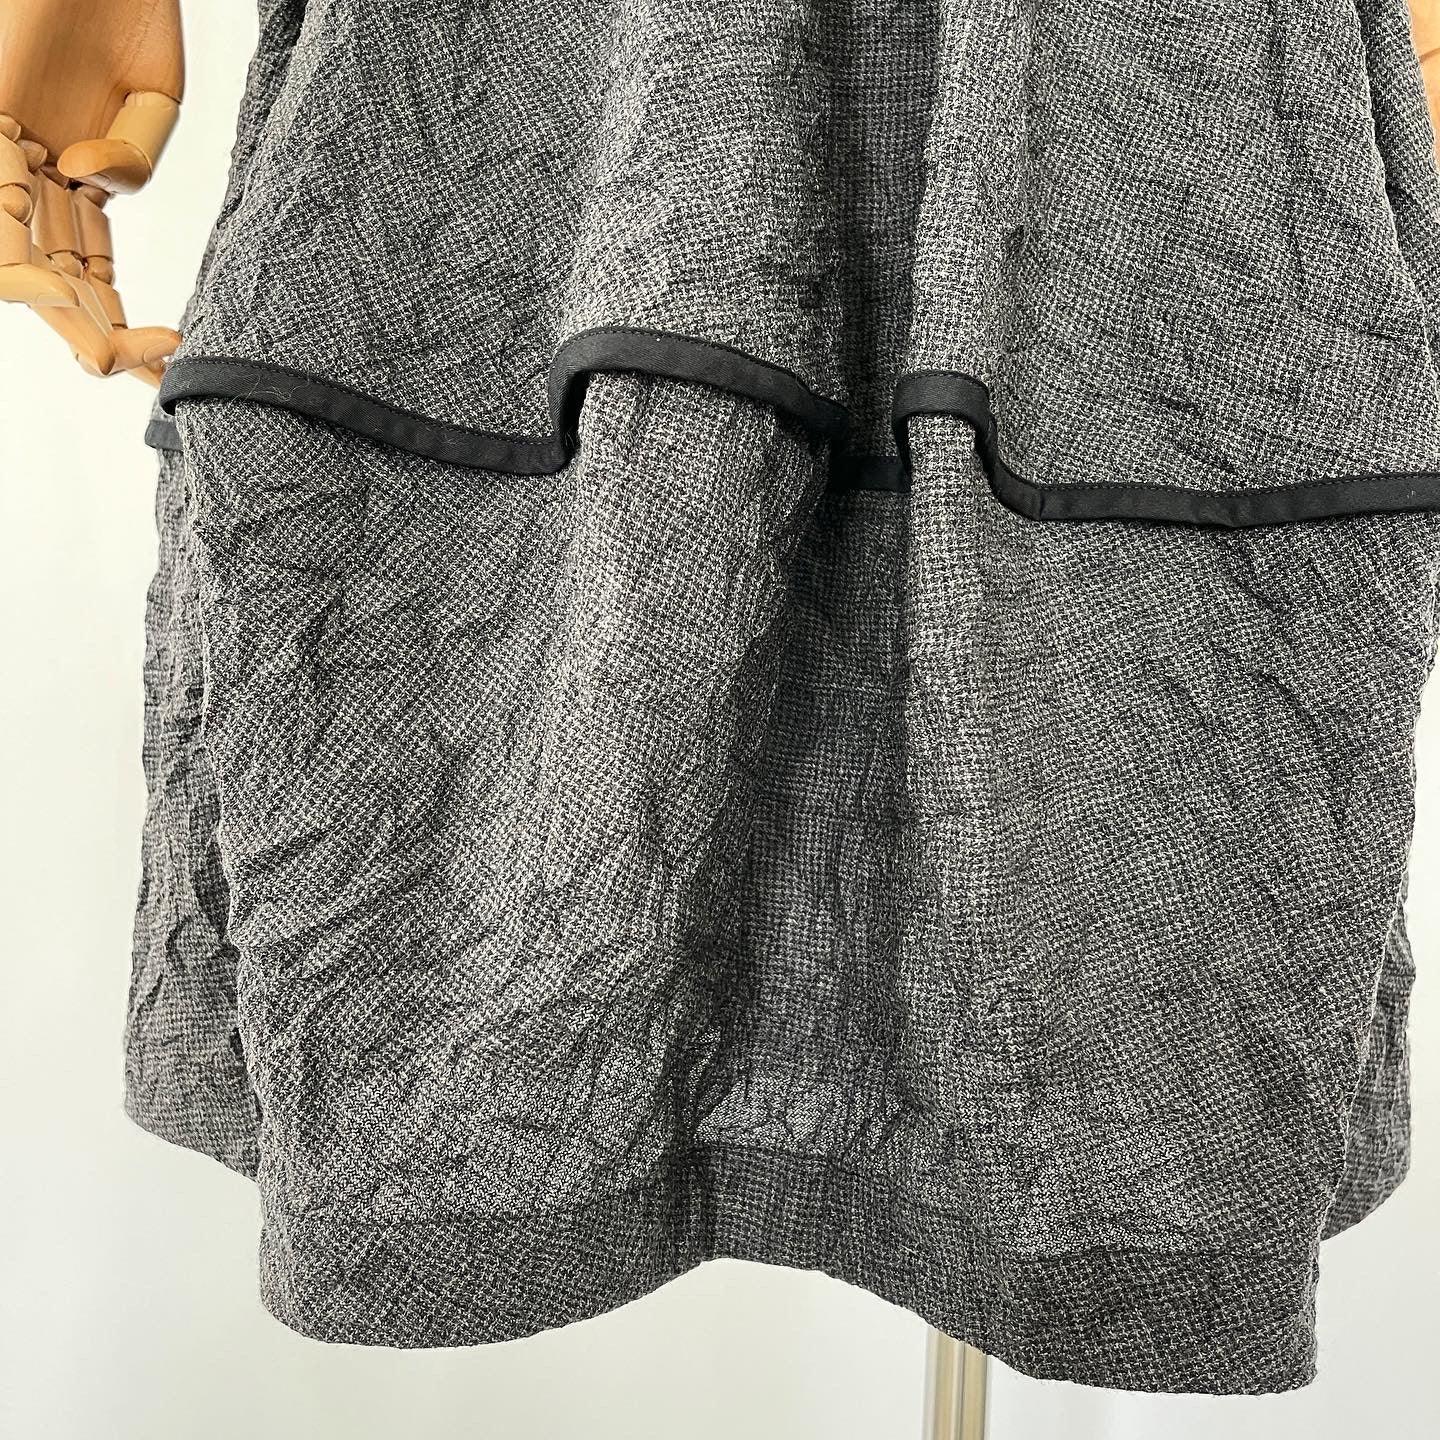 OSKA - OSKA Dress/Skirt - AVVIIVVA.COM